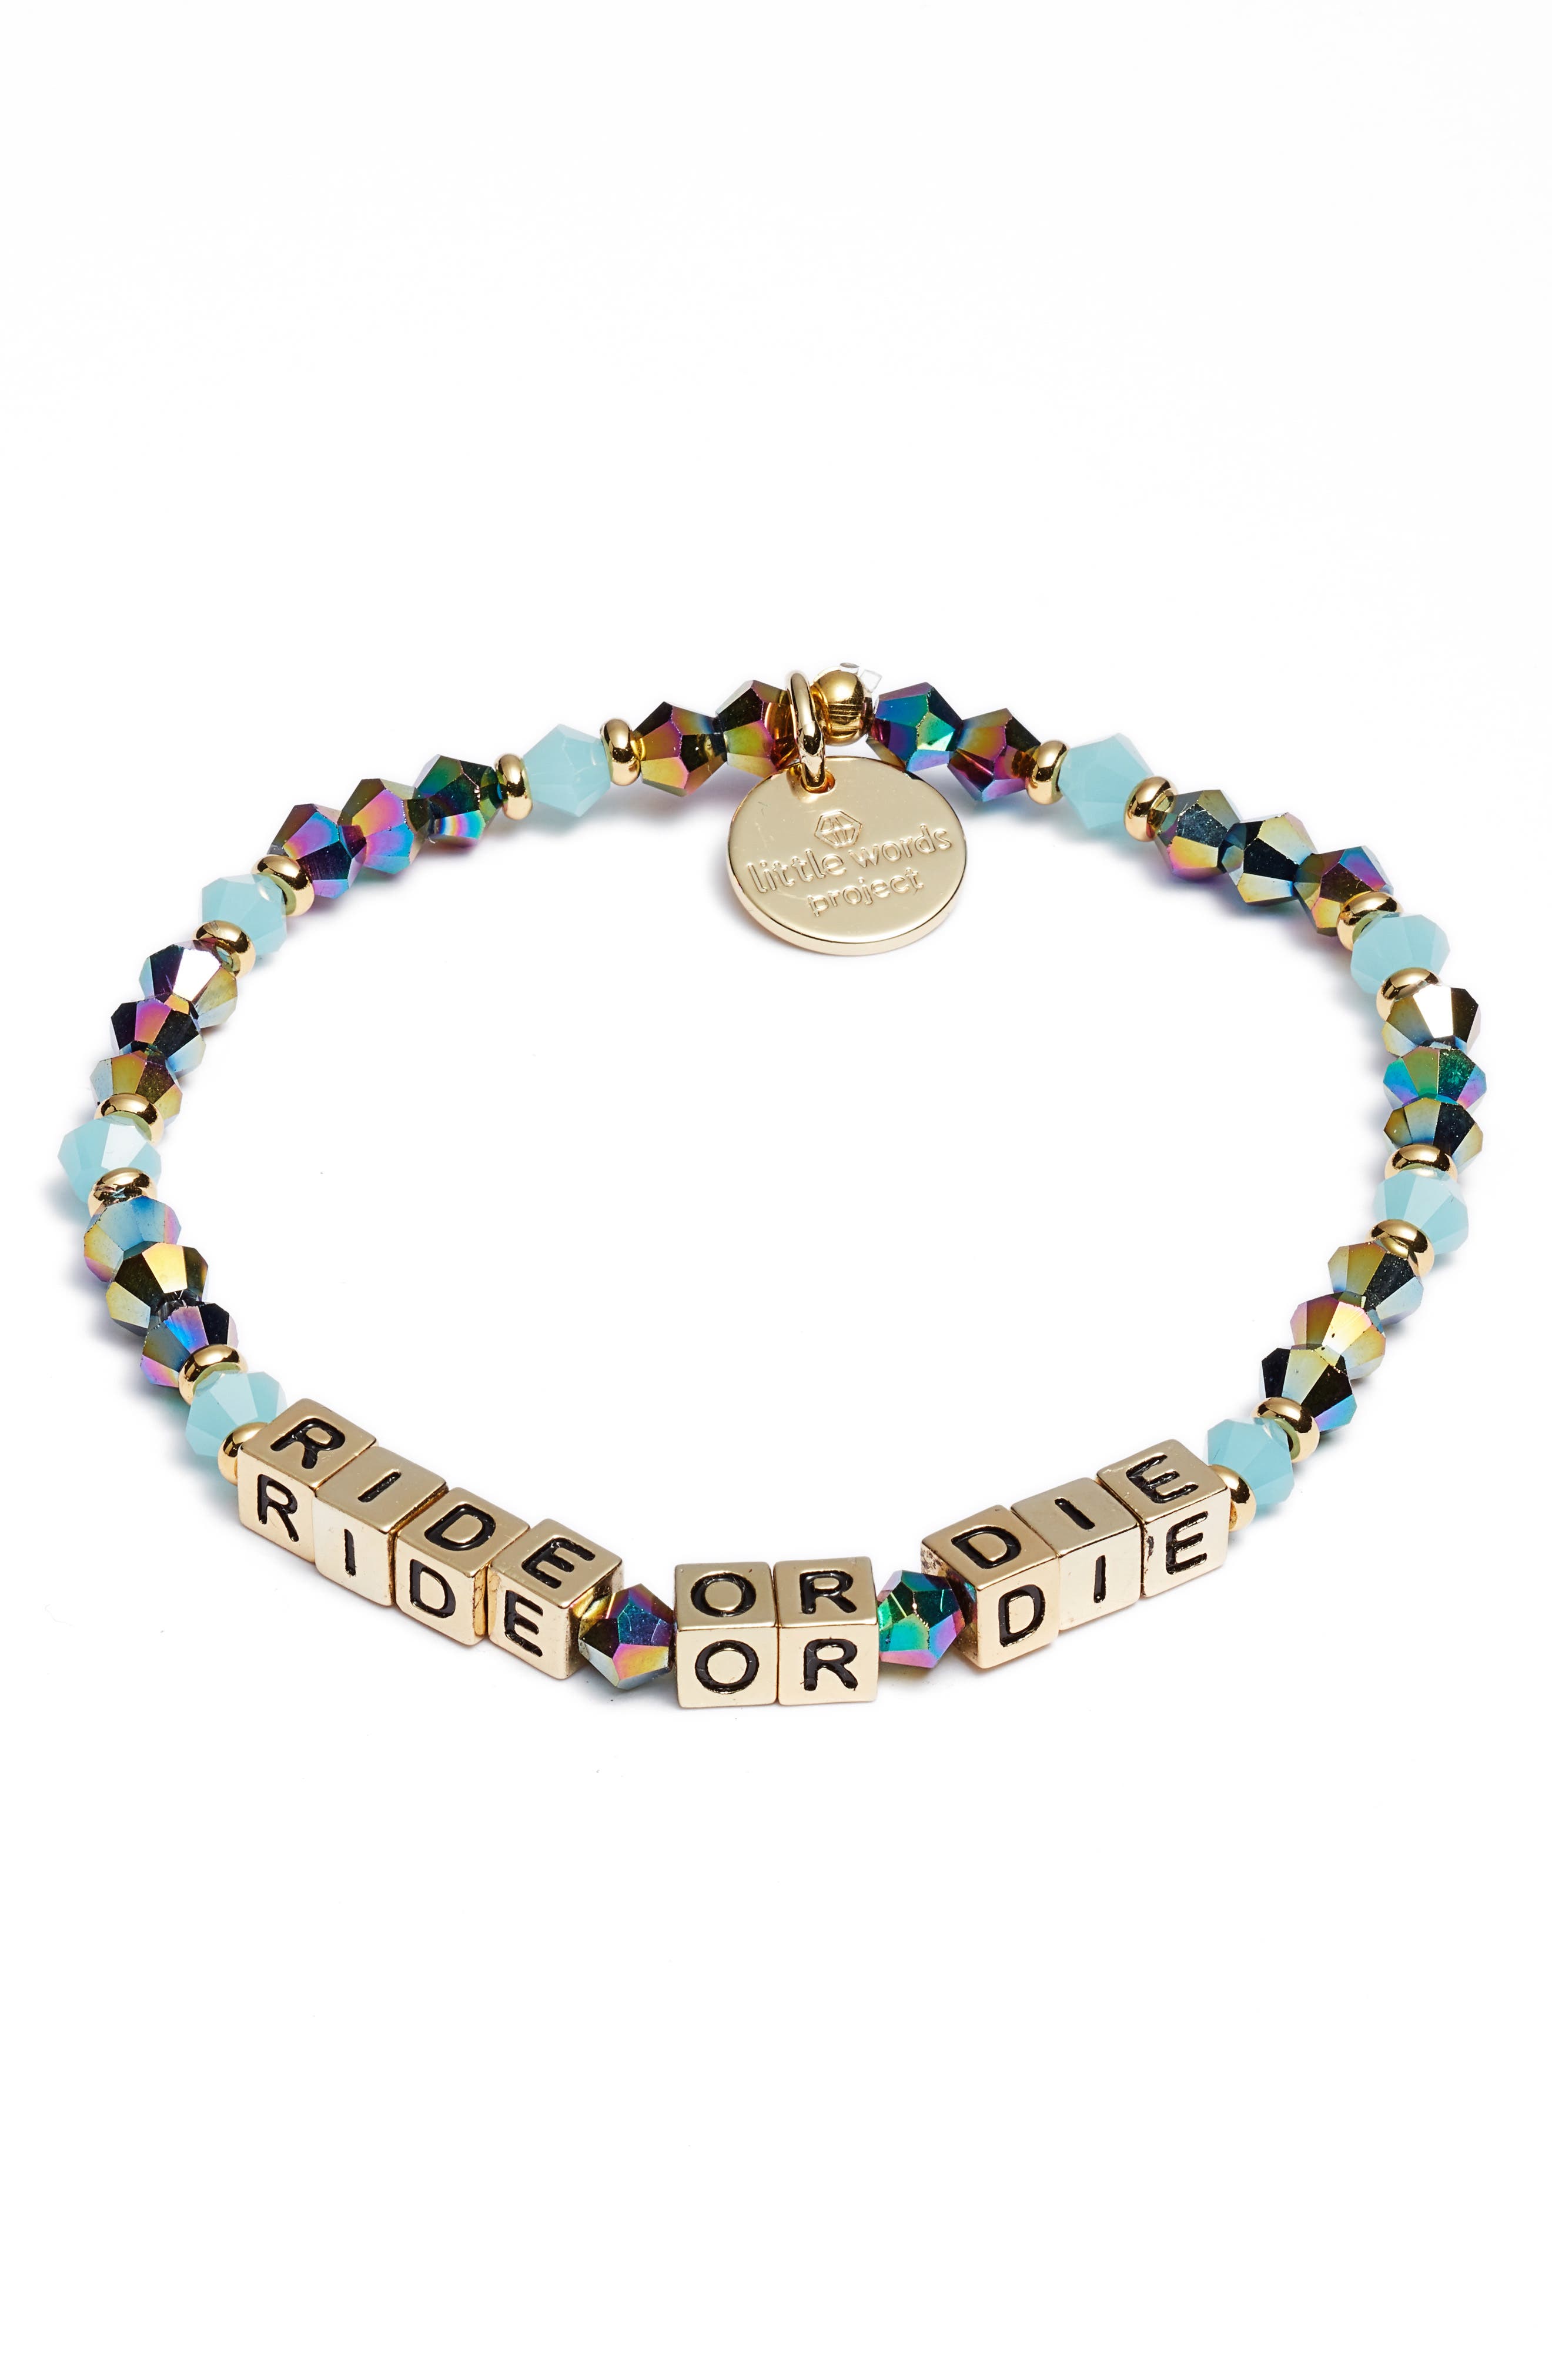 Women's Little Words Project Jewelry